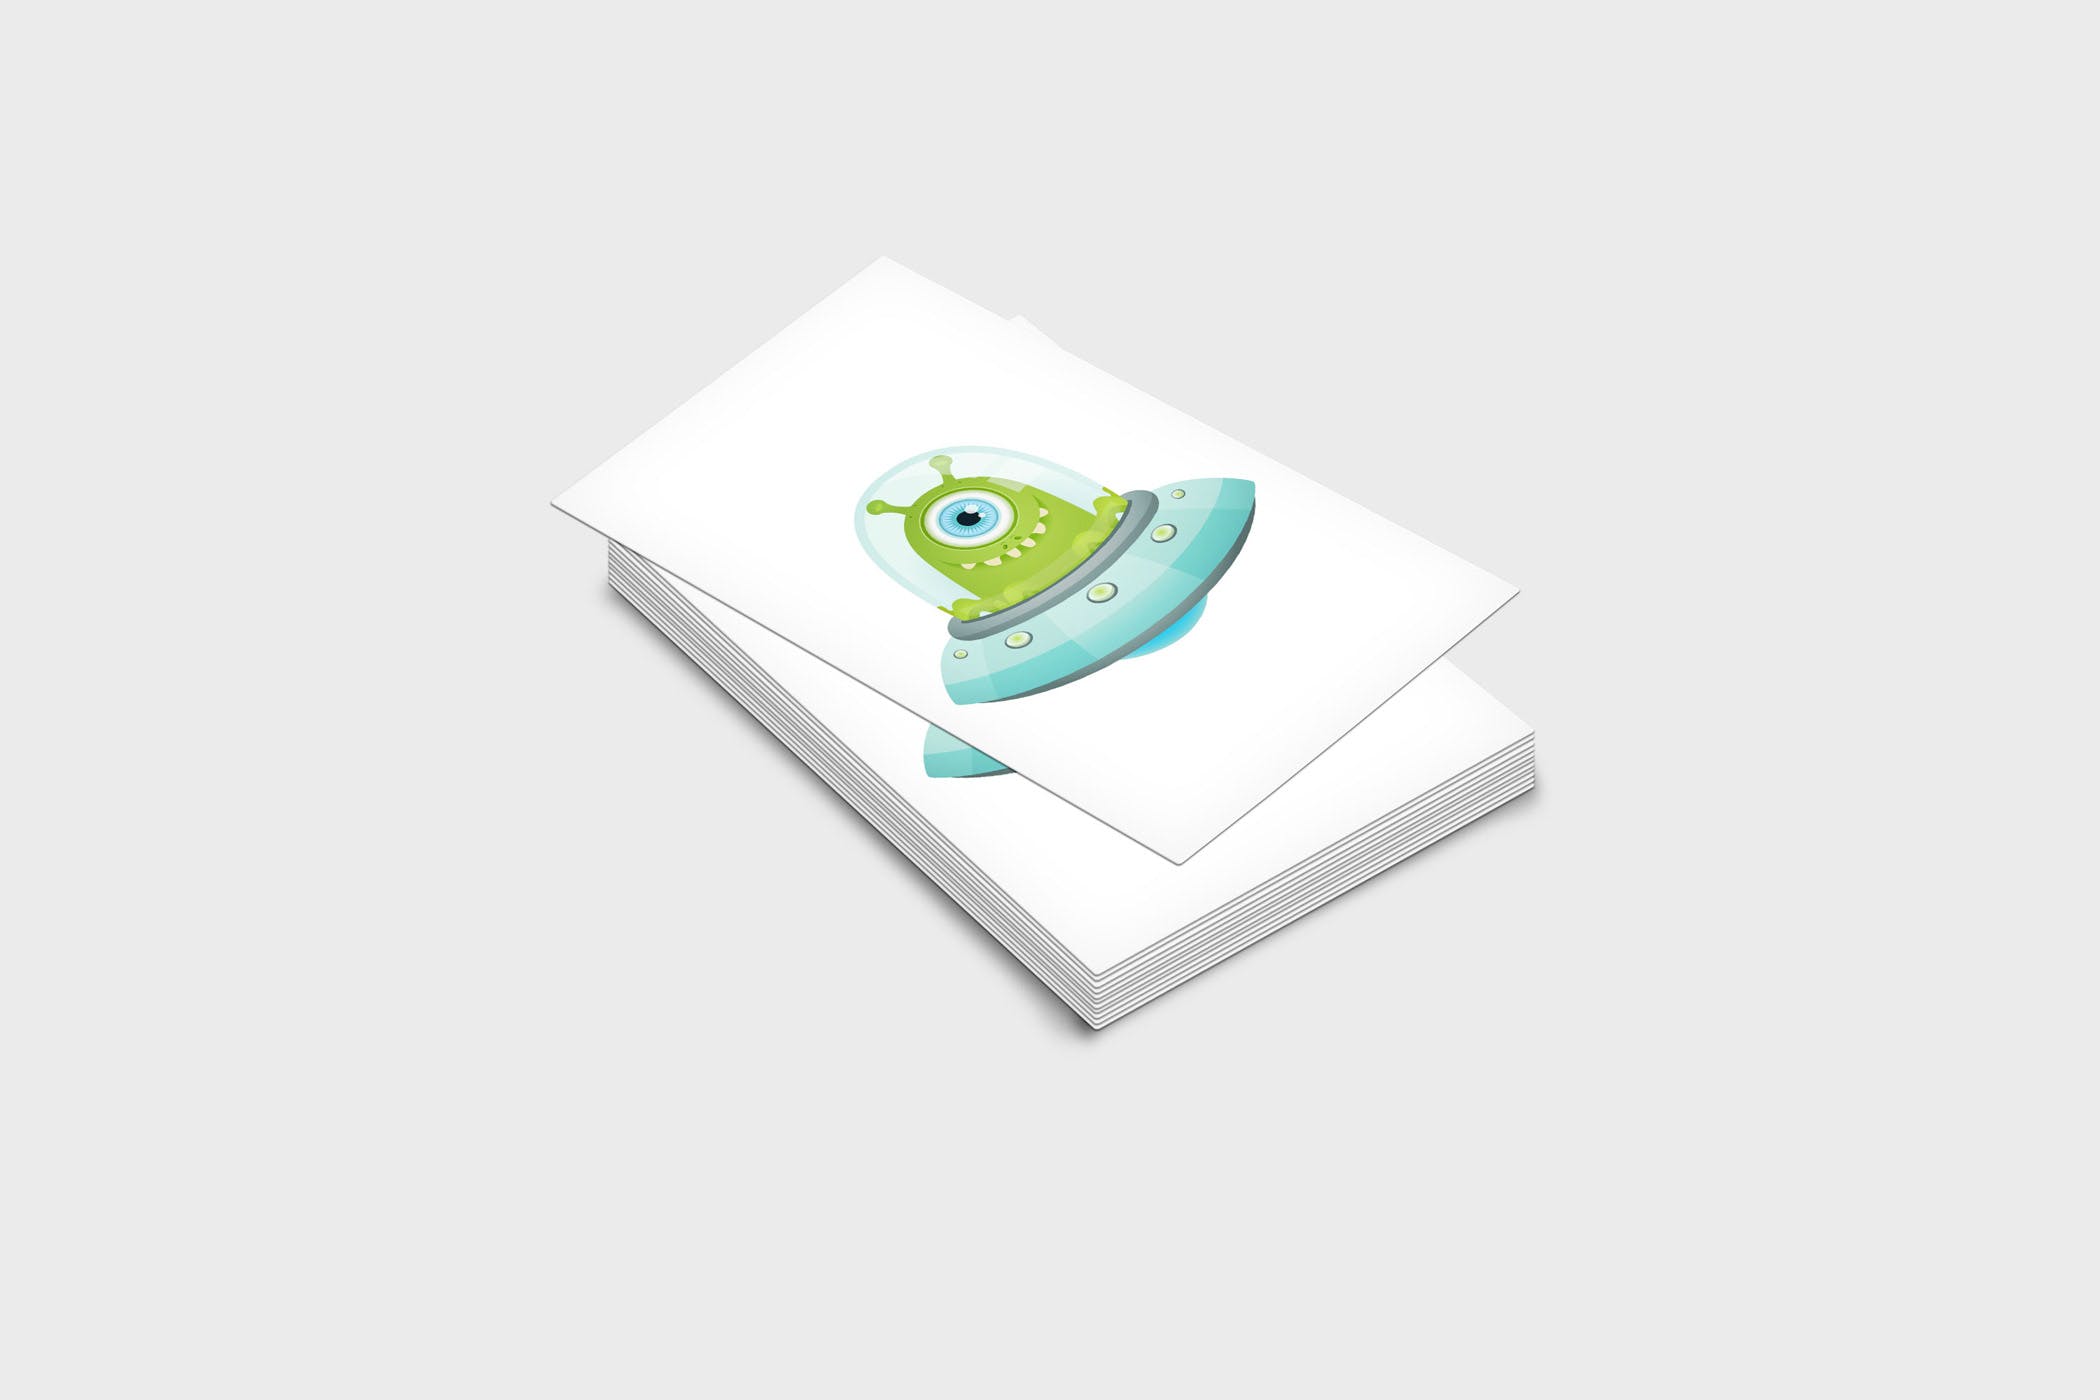 企业名片设计效果图展示样机素材中国精选模板 4 Business Card Mock-Up Template插图(1)